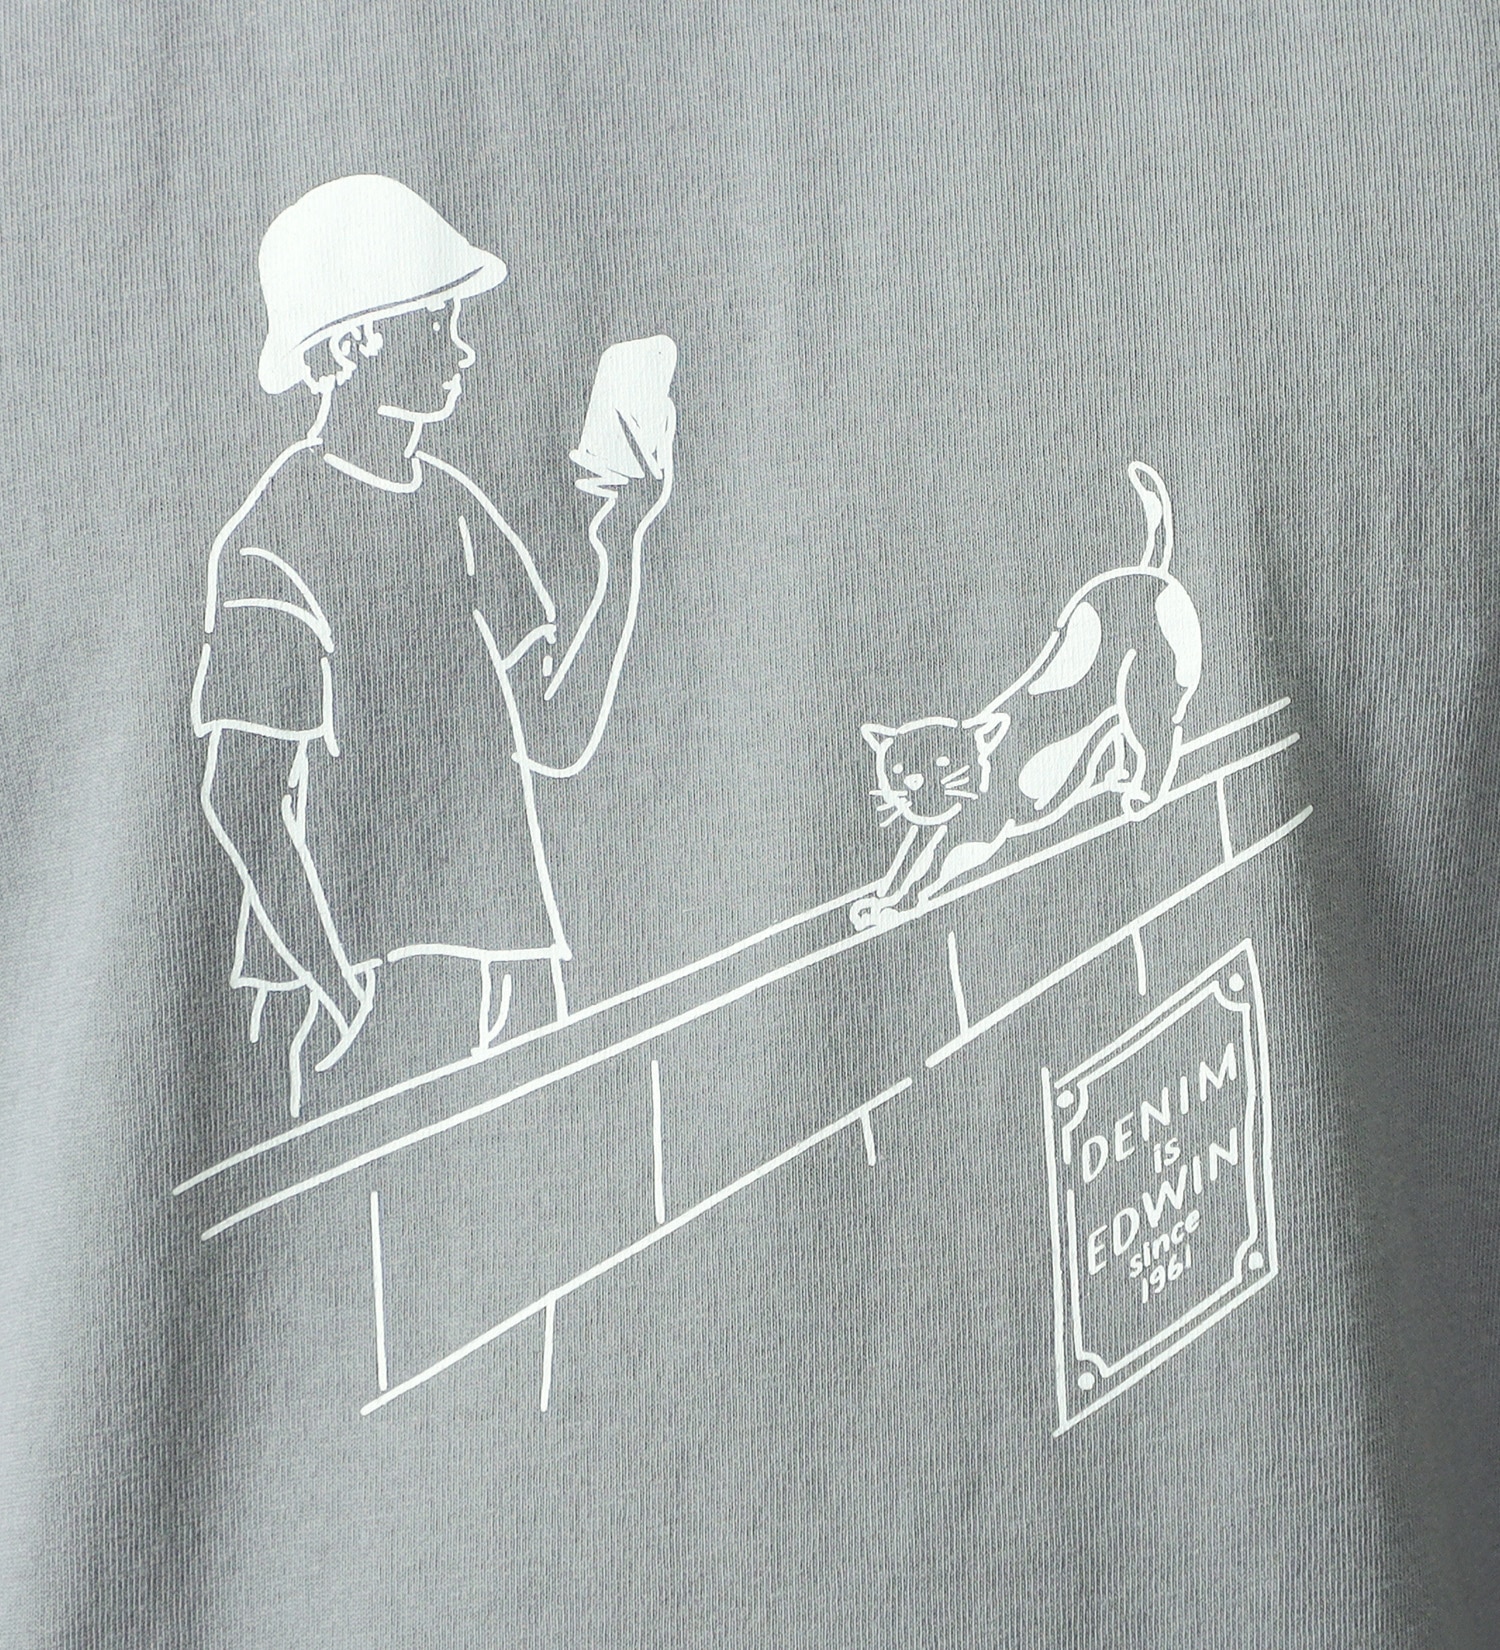 EDWIN(エドウイン)のハンドライティングプリントTシャツ【アウトレット店舗・WEB限定】|トップス/Tシャツ/カットソー/メンズ|ライトグレー